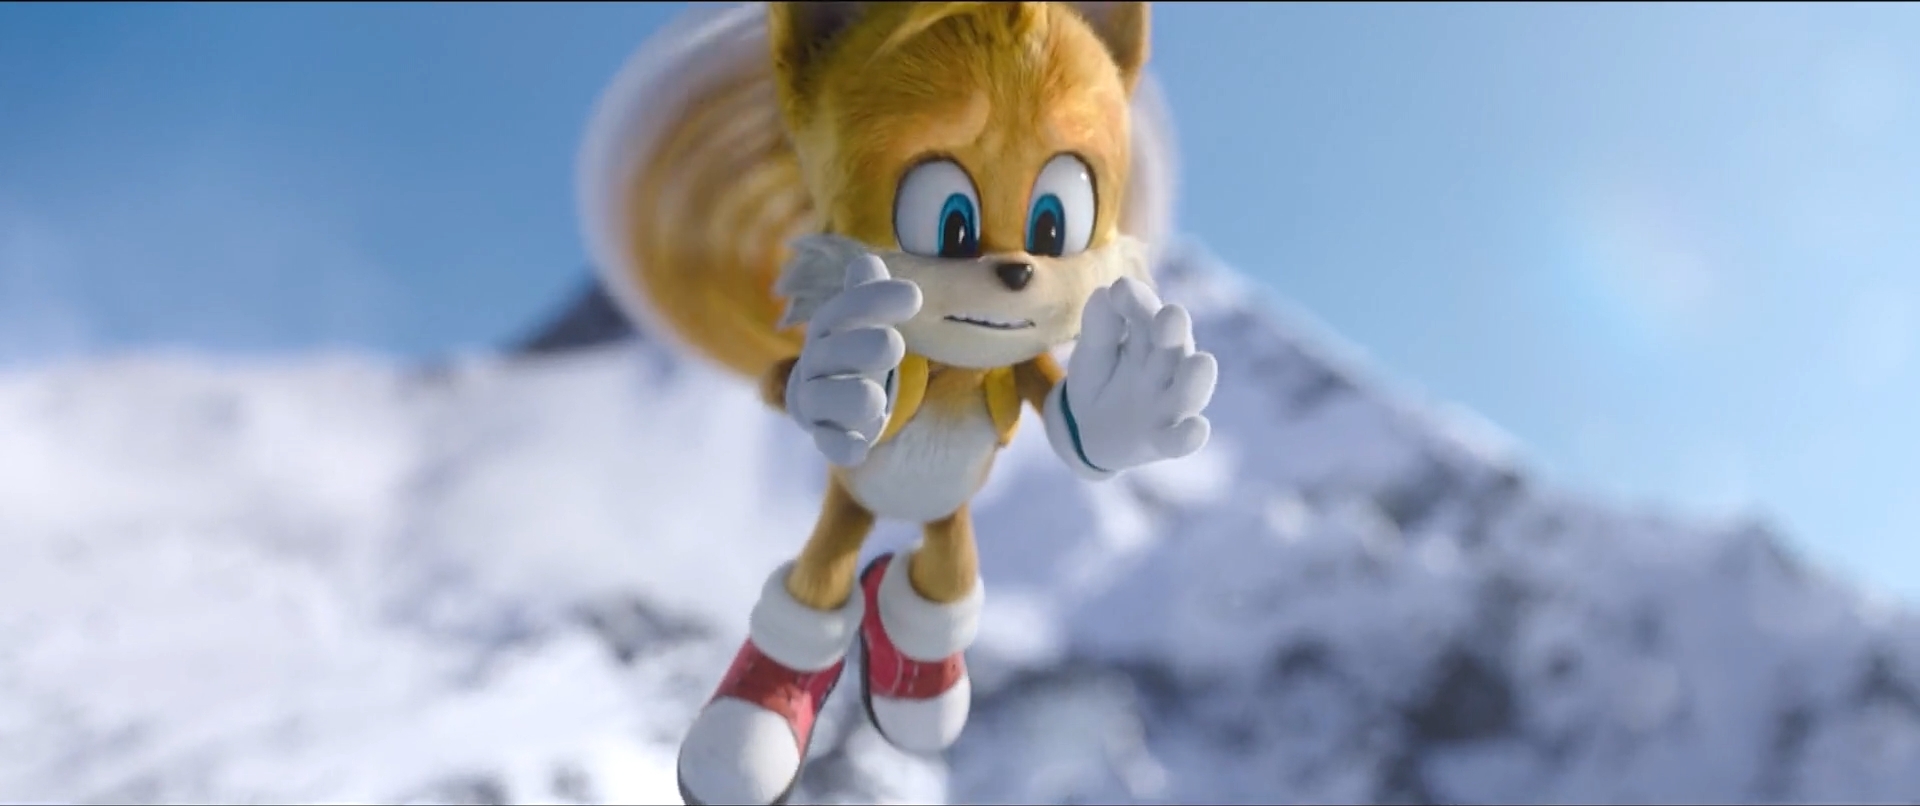 Sonic the Hedgehog 2020-Sonic 12 by GiuseppeDiRosso on DeviantArt